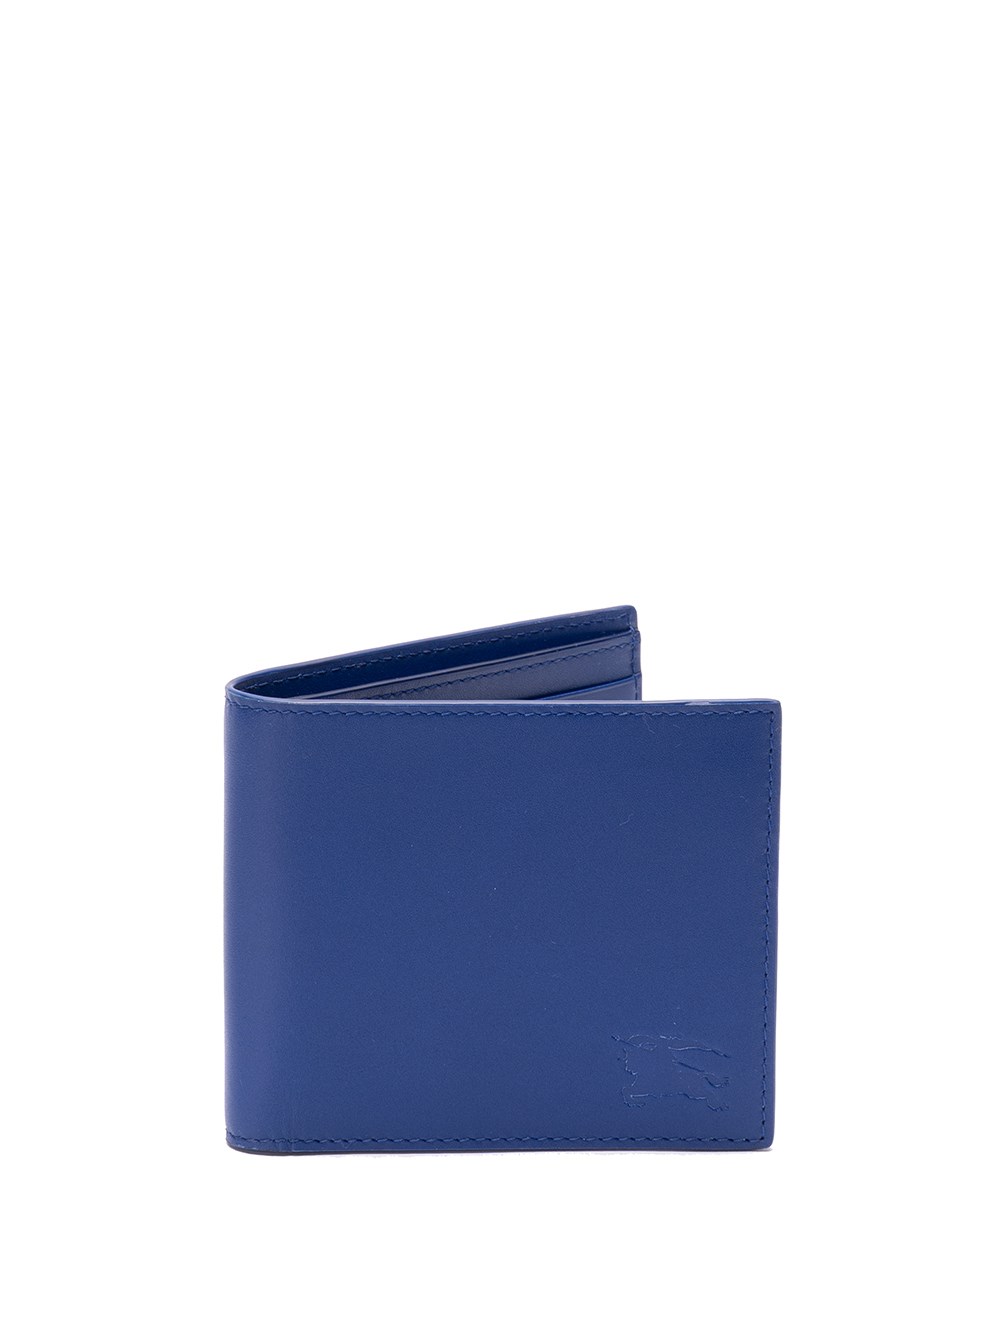 Burberry `ekd` Wallet In Blue